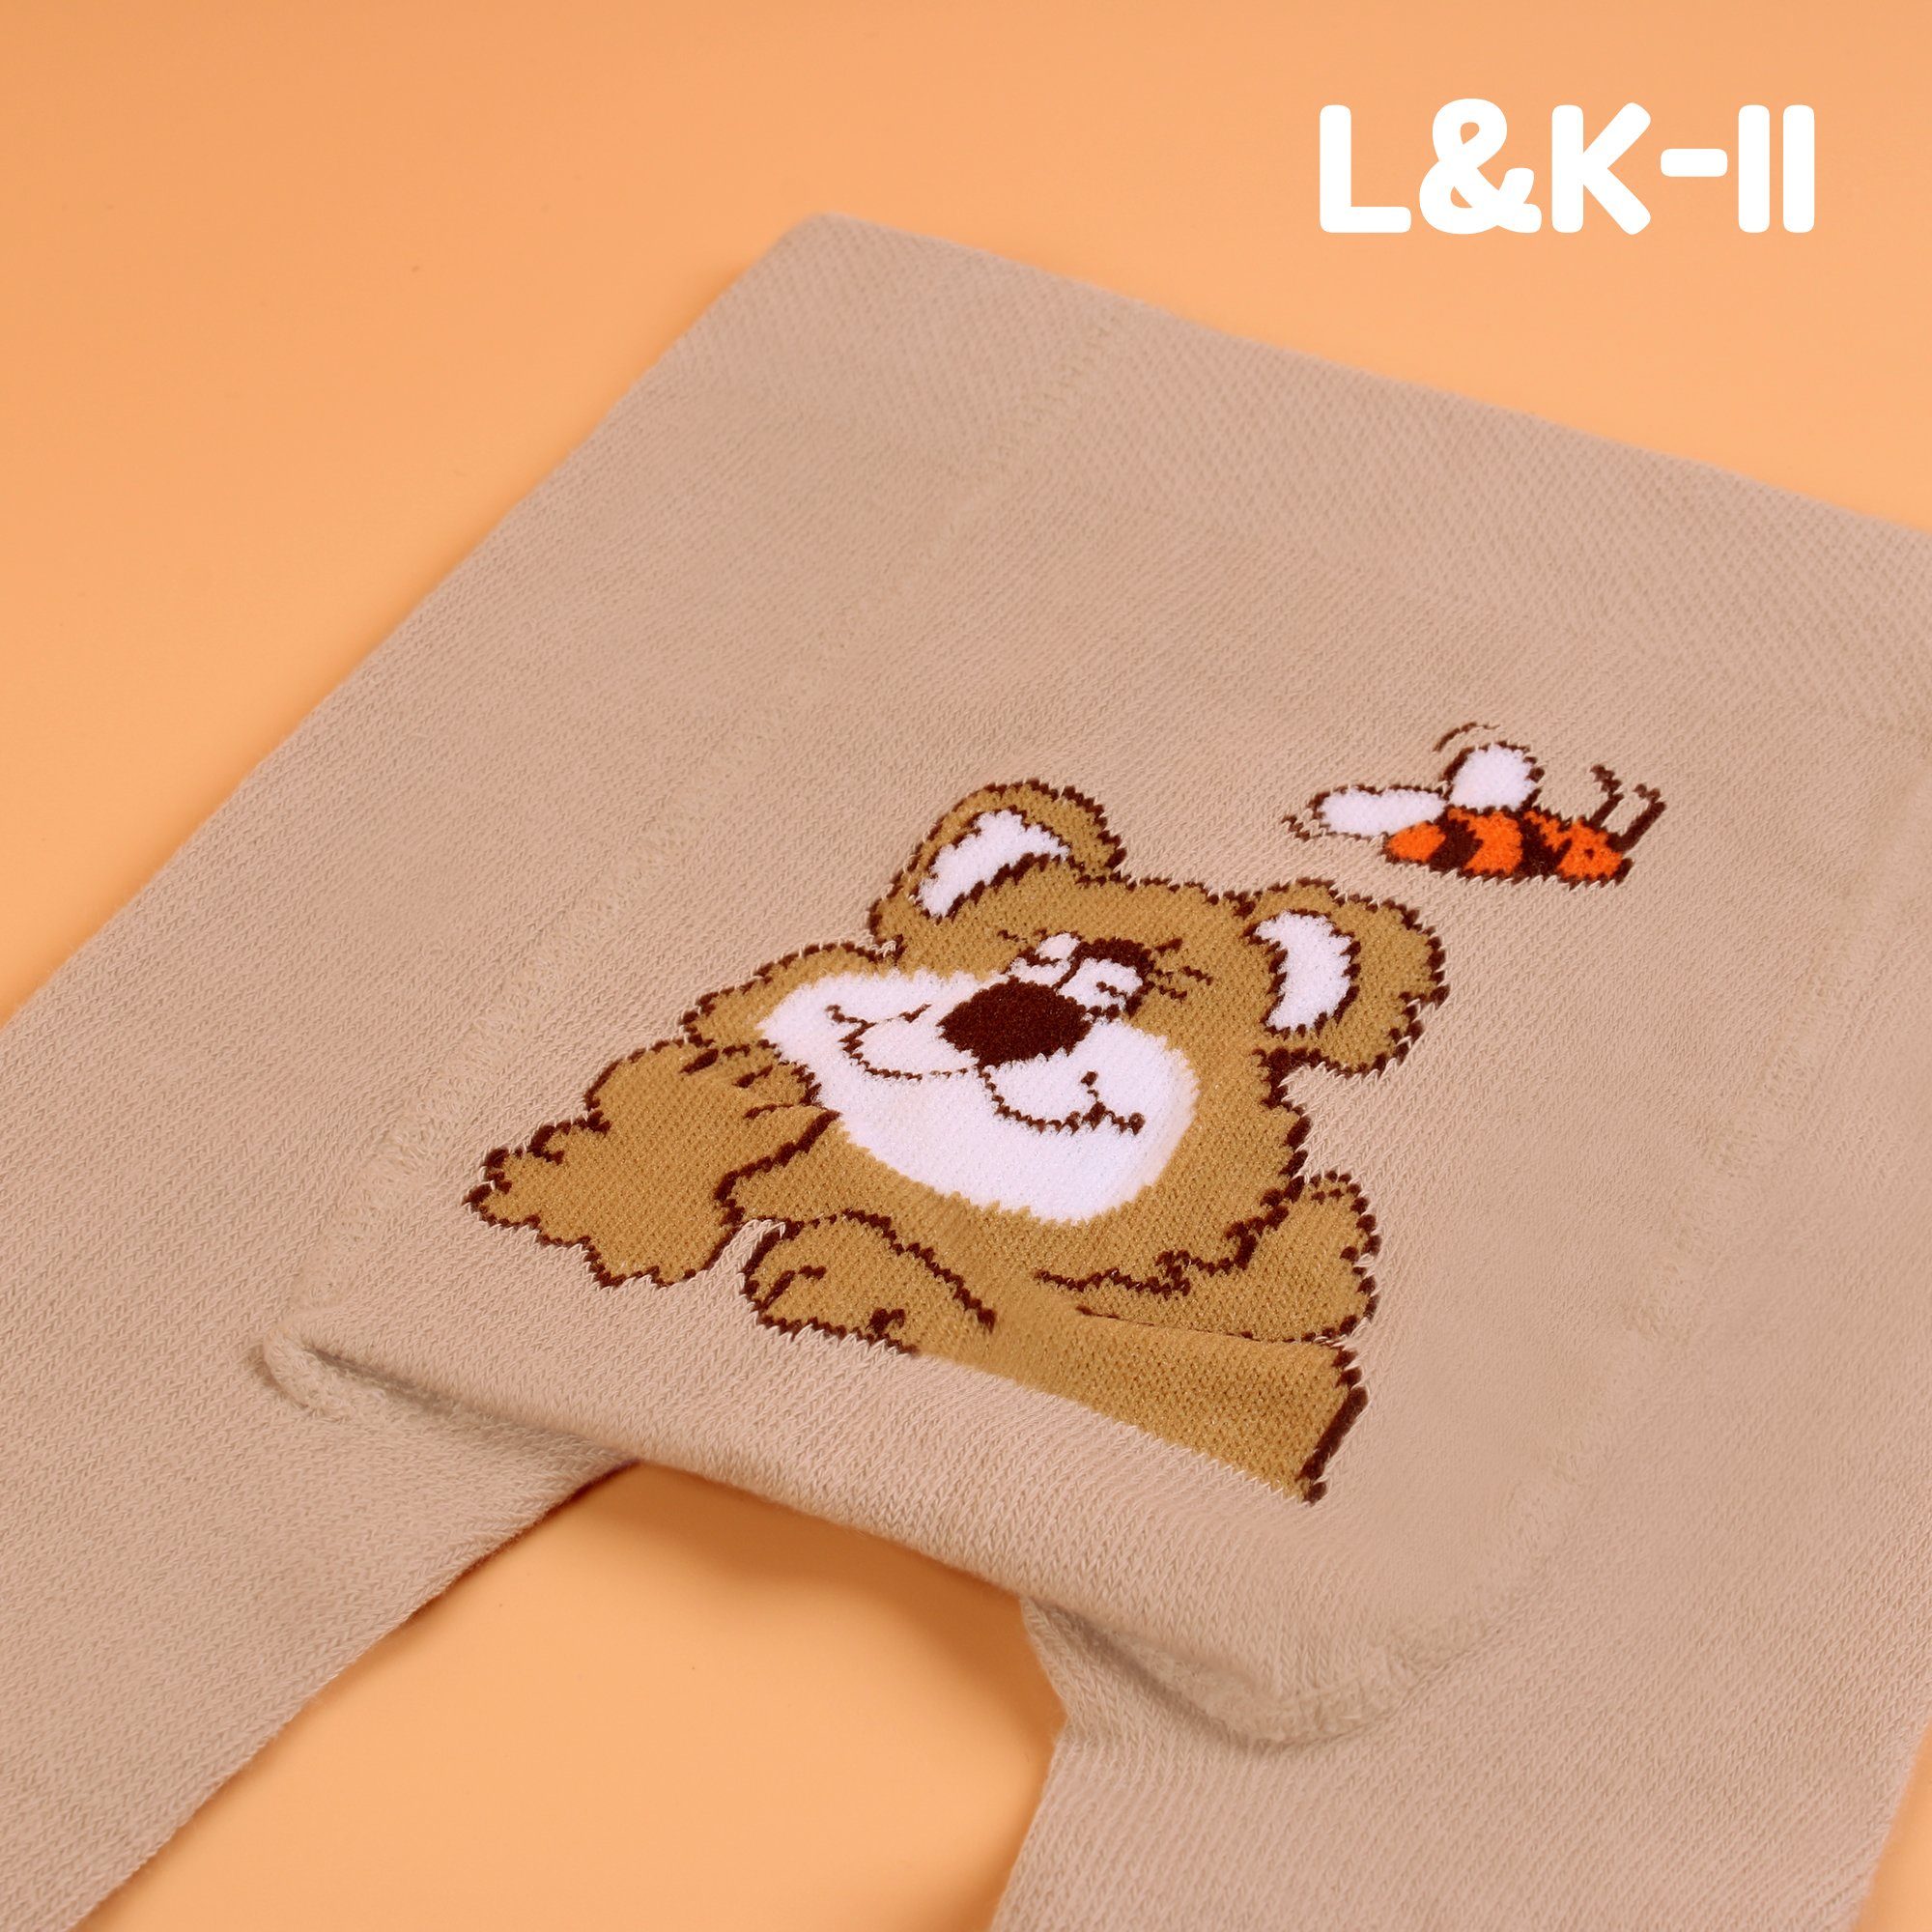 L&K-II Strumpfhose 2770 Motiv Bären Jungen Baby Auto Hund Affen mit Löwen und Strumpfhose für